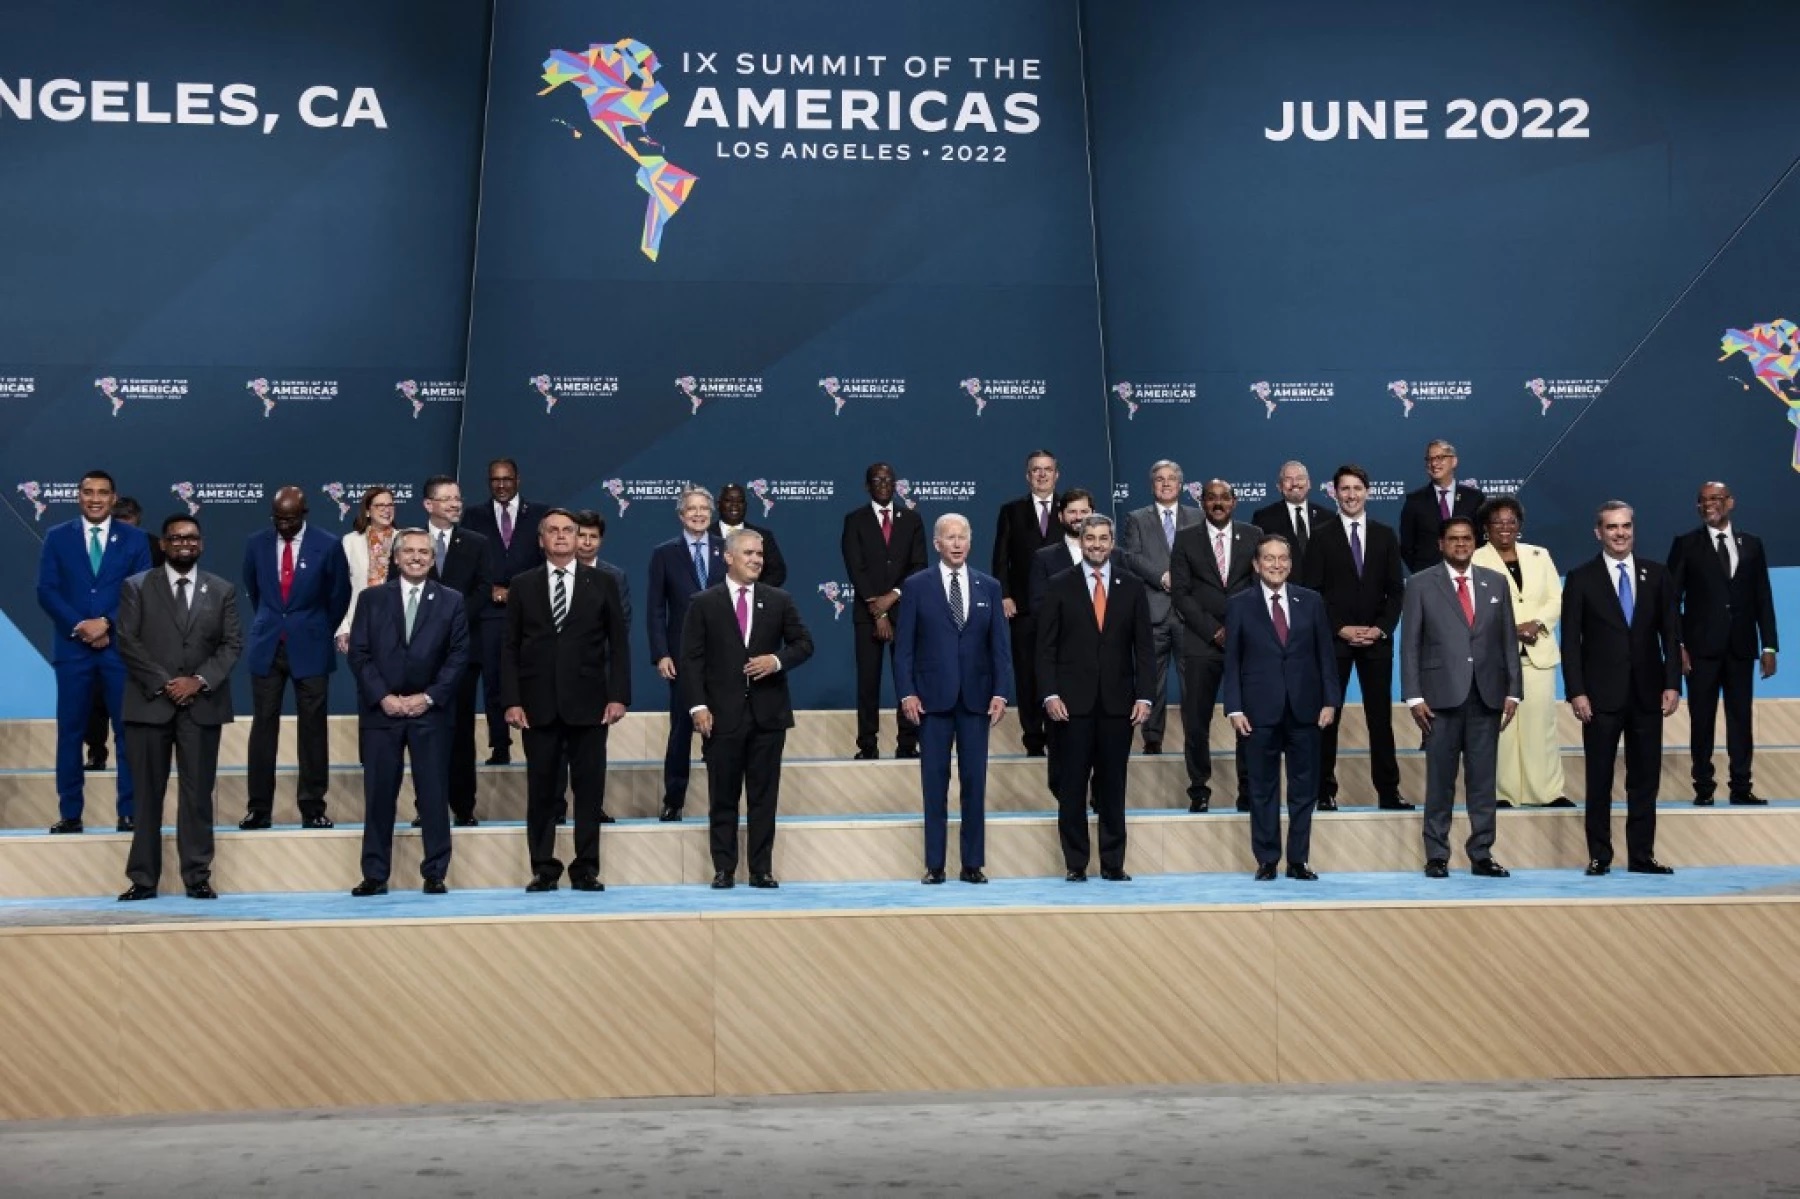 Con pena y sin gloria la Cumbre de las Américas / Héctor Aguilar Camín